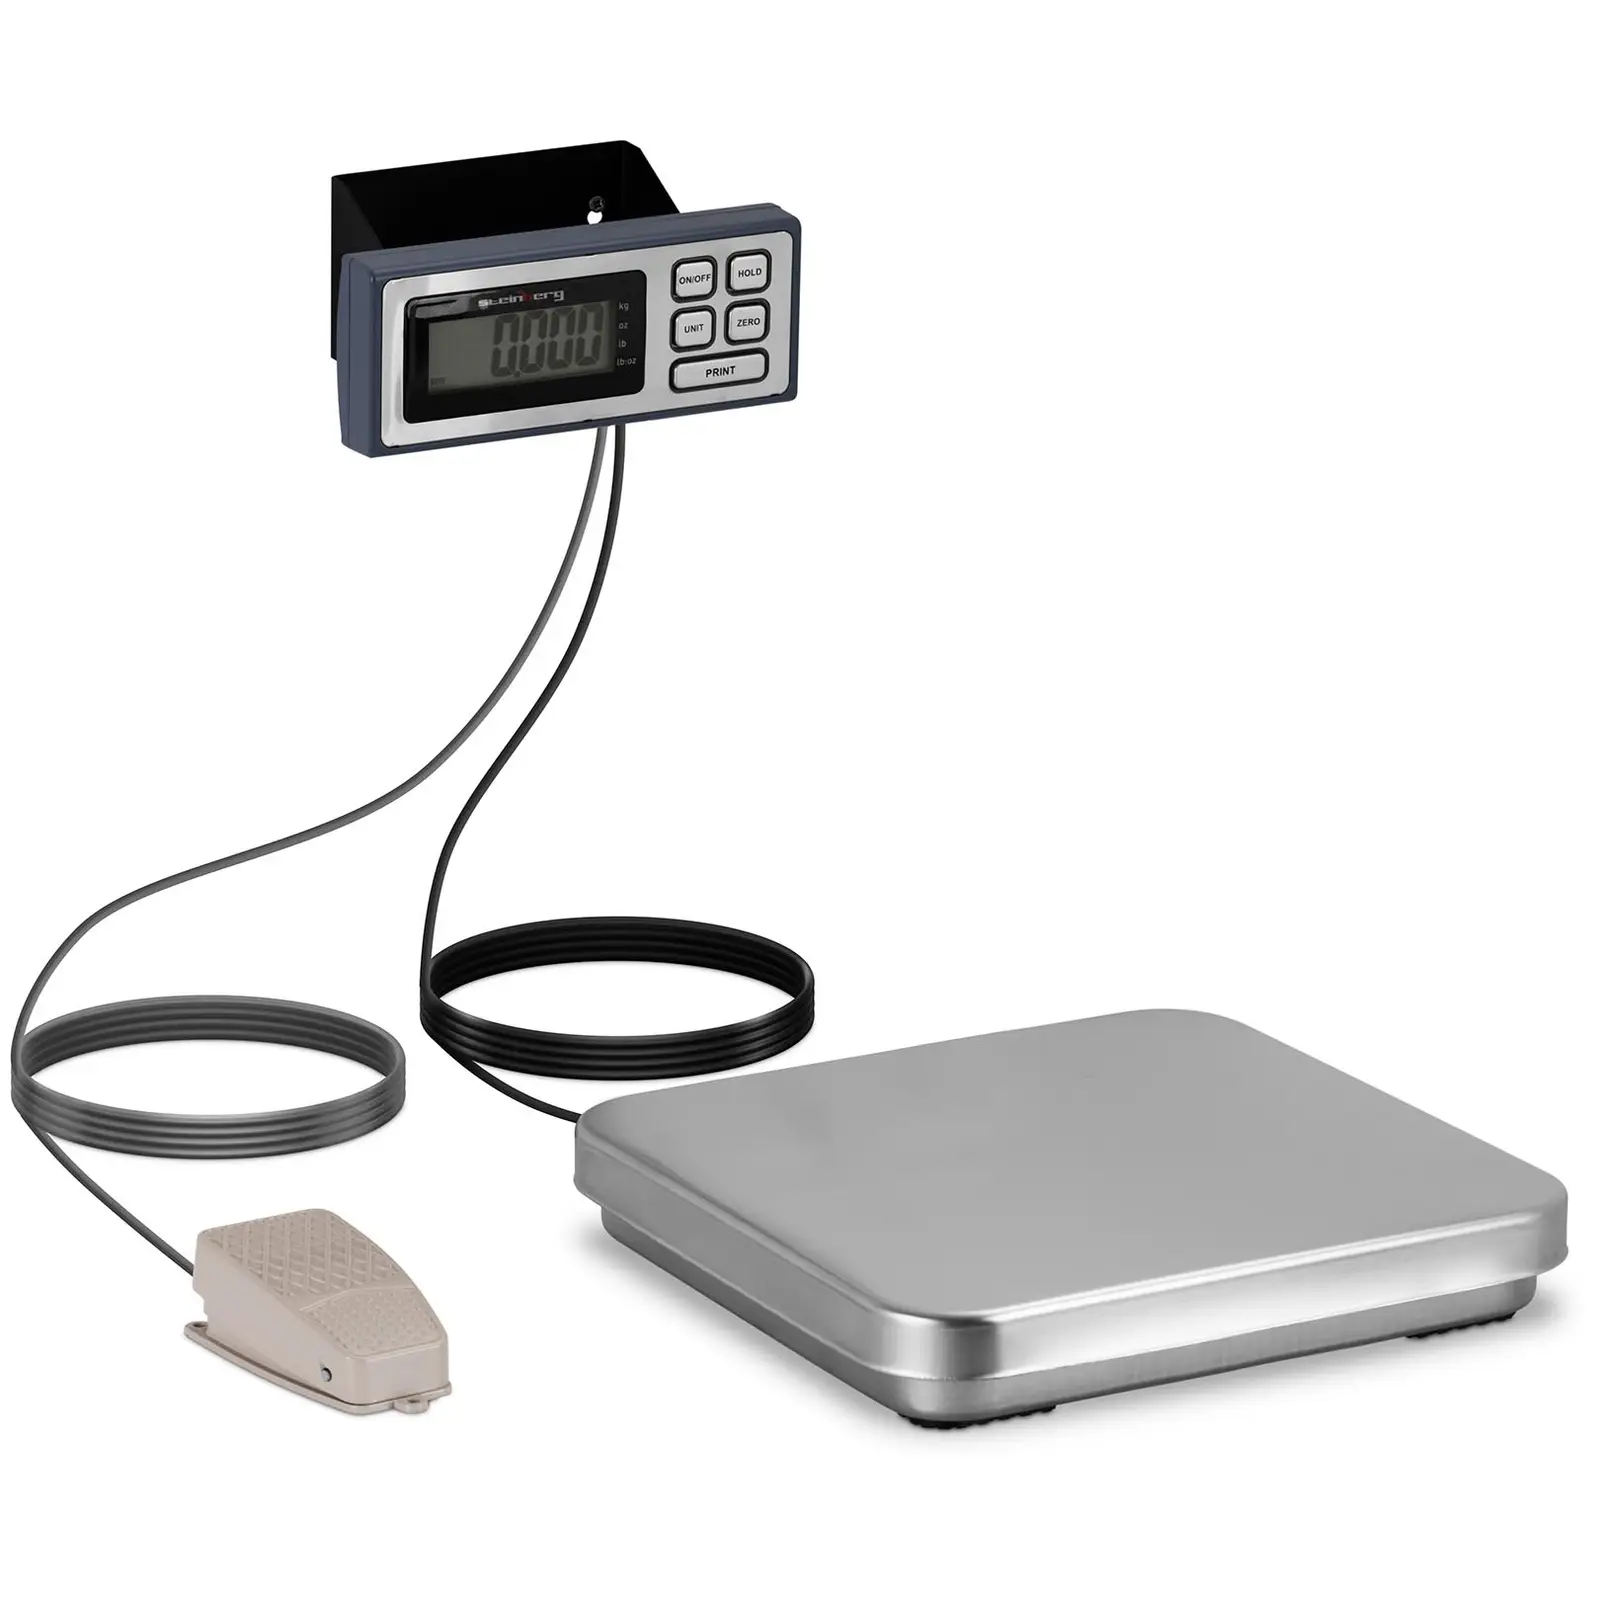 Digital köksvåg - fotpedal - 10 kg / 2 g - 320 x 310 mm - LCD